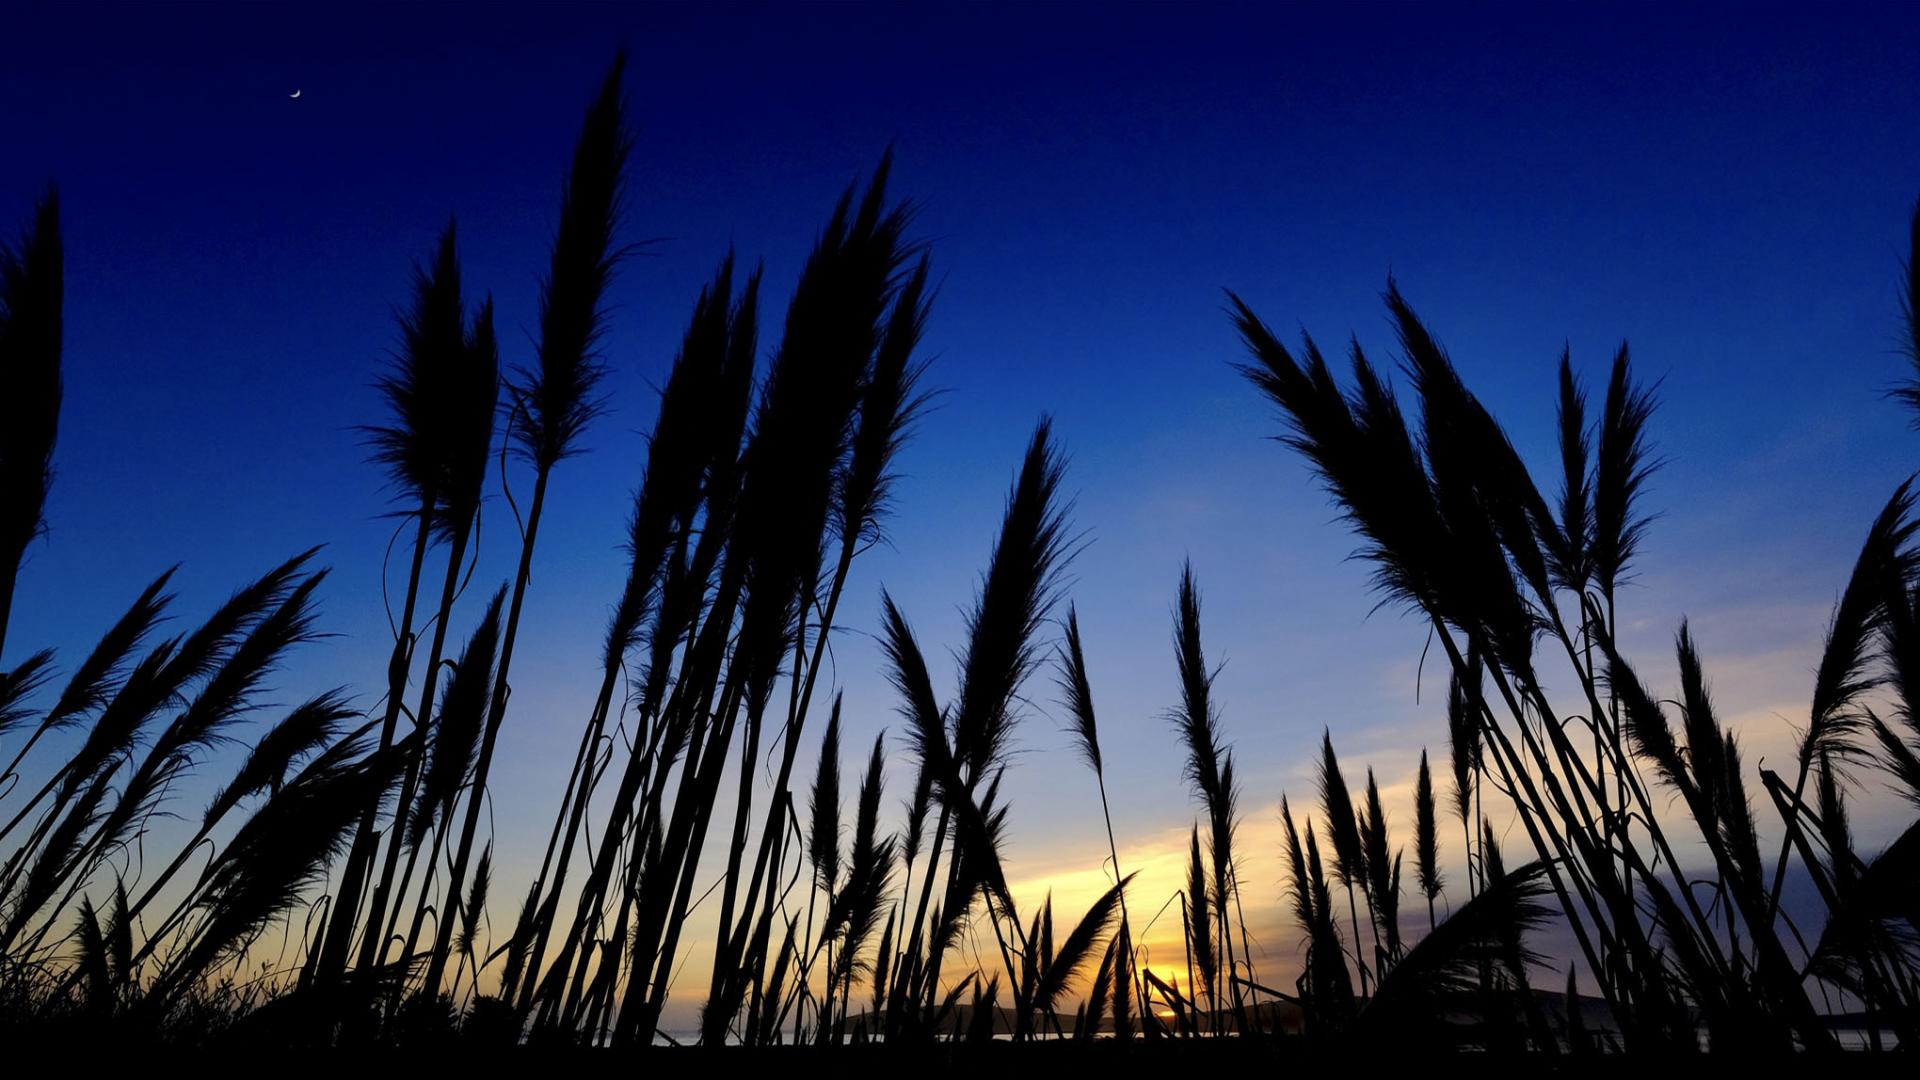 Grasses against sky at dusk